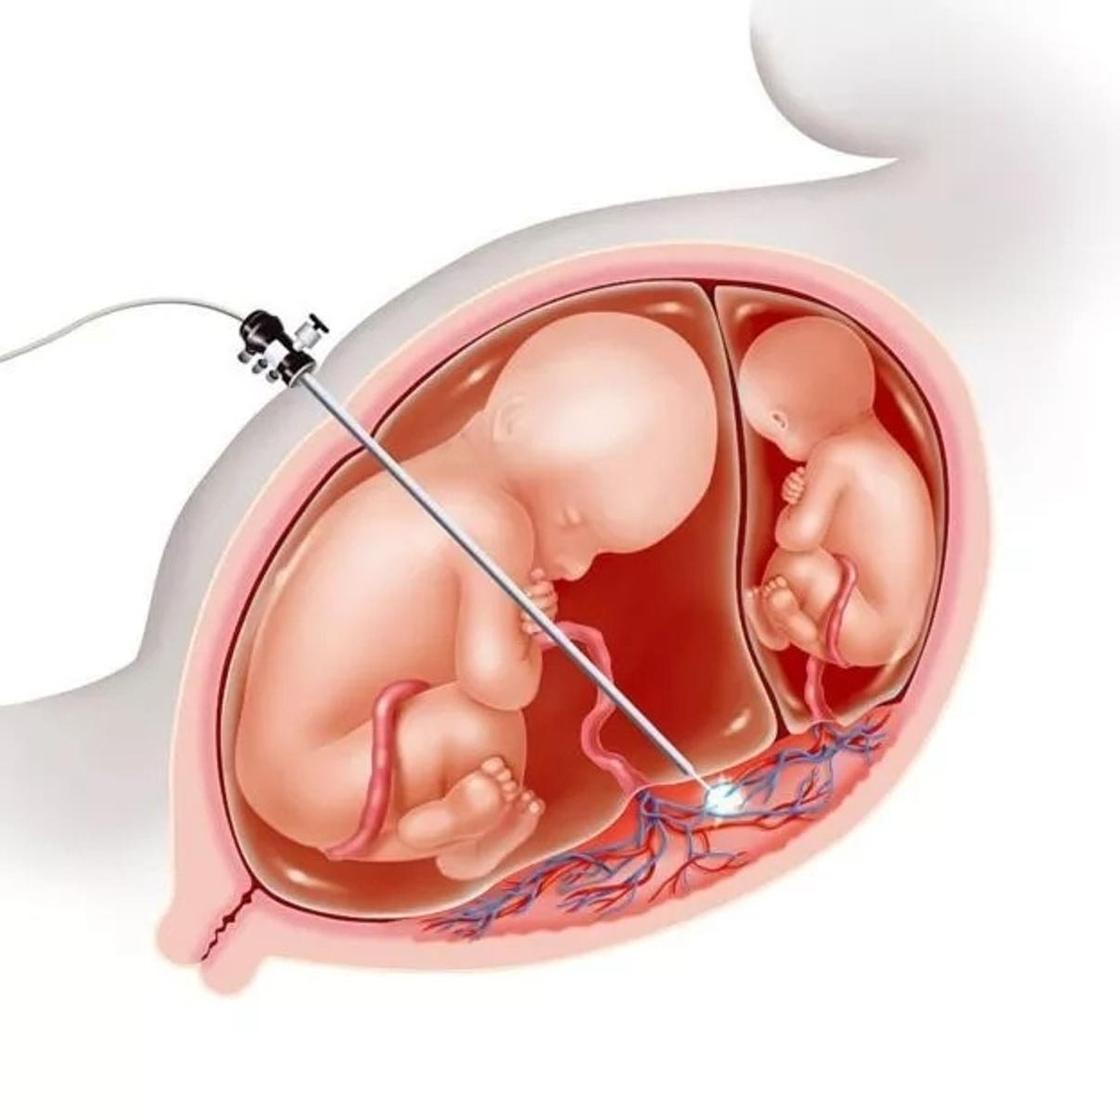 В России сделали операцию эмбриону без кесарева сечения. Как это стало возможным?